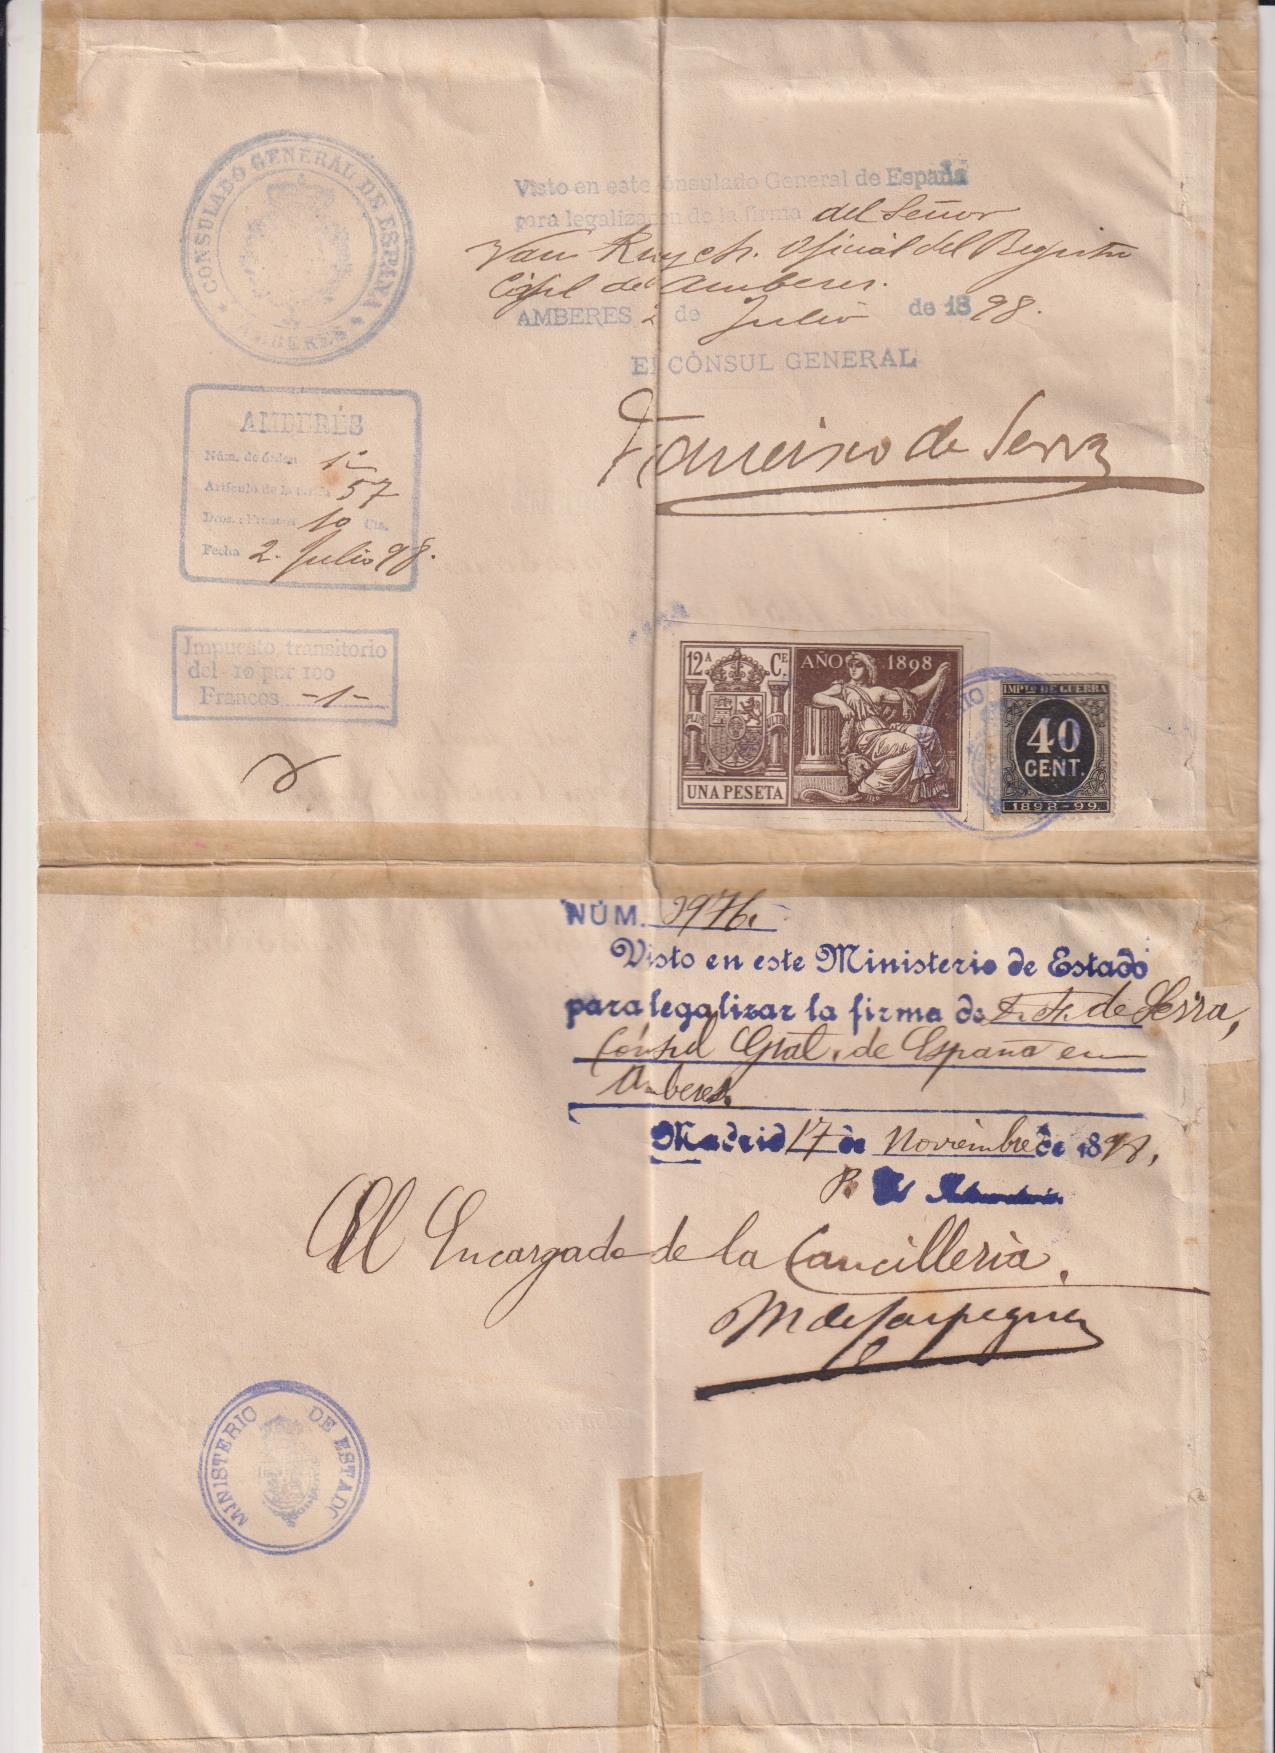 Partida de nacimiento, Anvers, 1898. Visto y firmado por el Consul Español. Timbres -